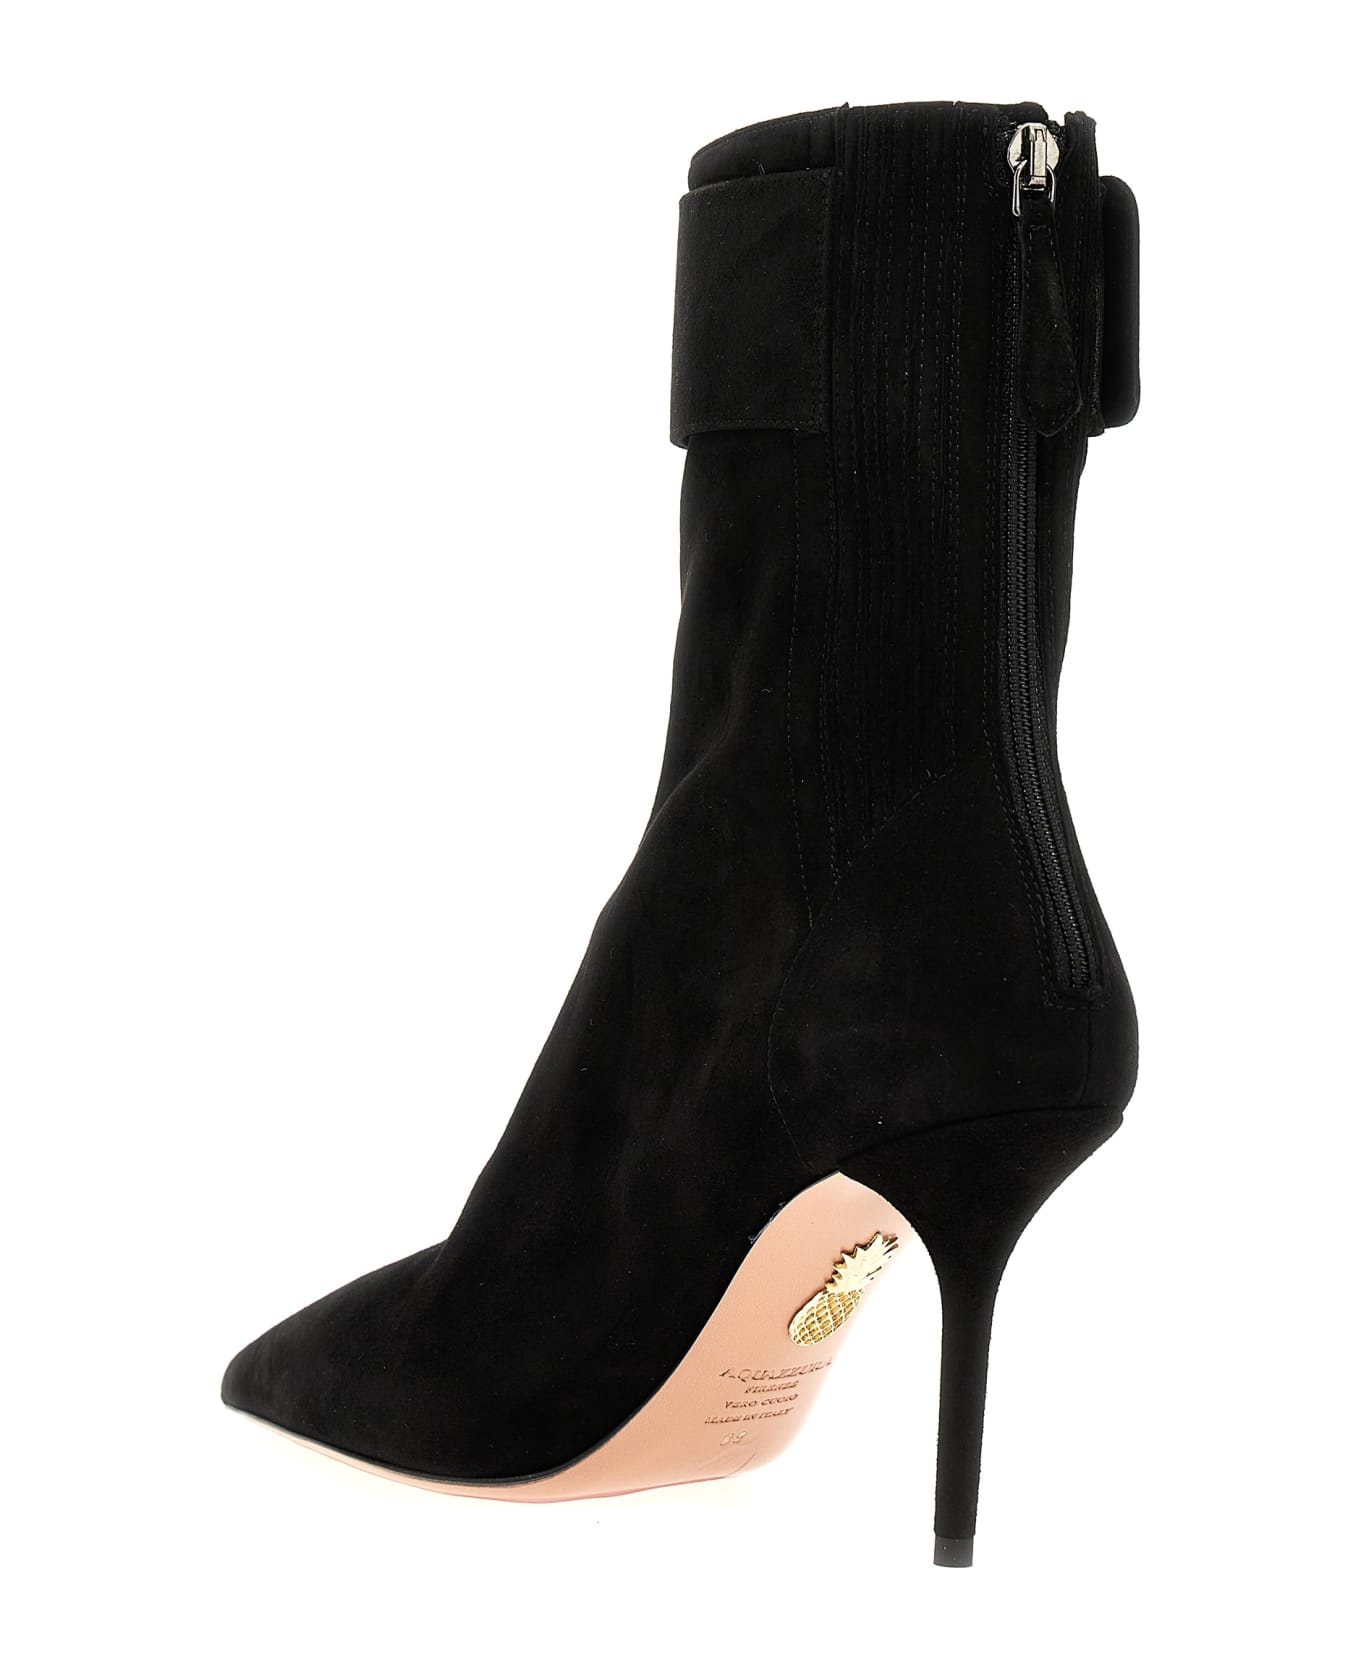 Aquazzura 'st. Honoré' Ankle Boots - Black  